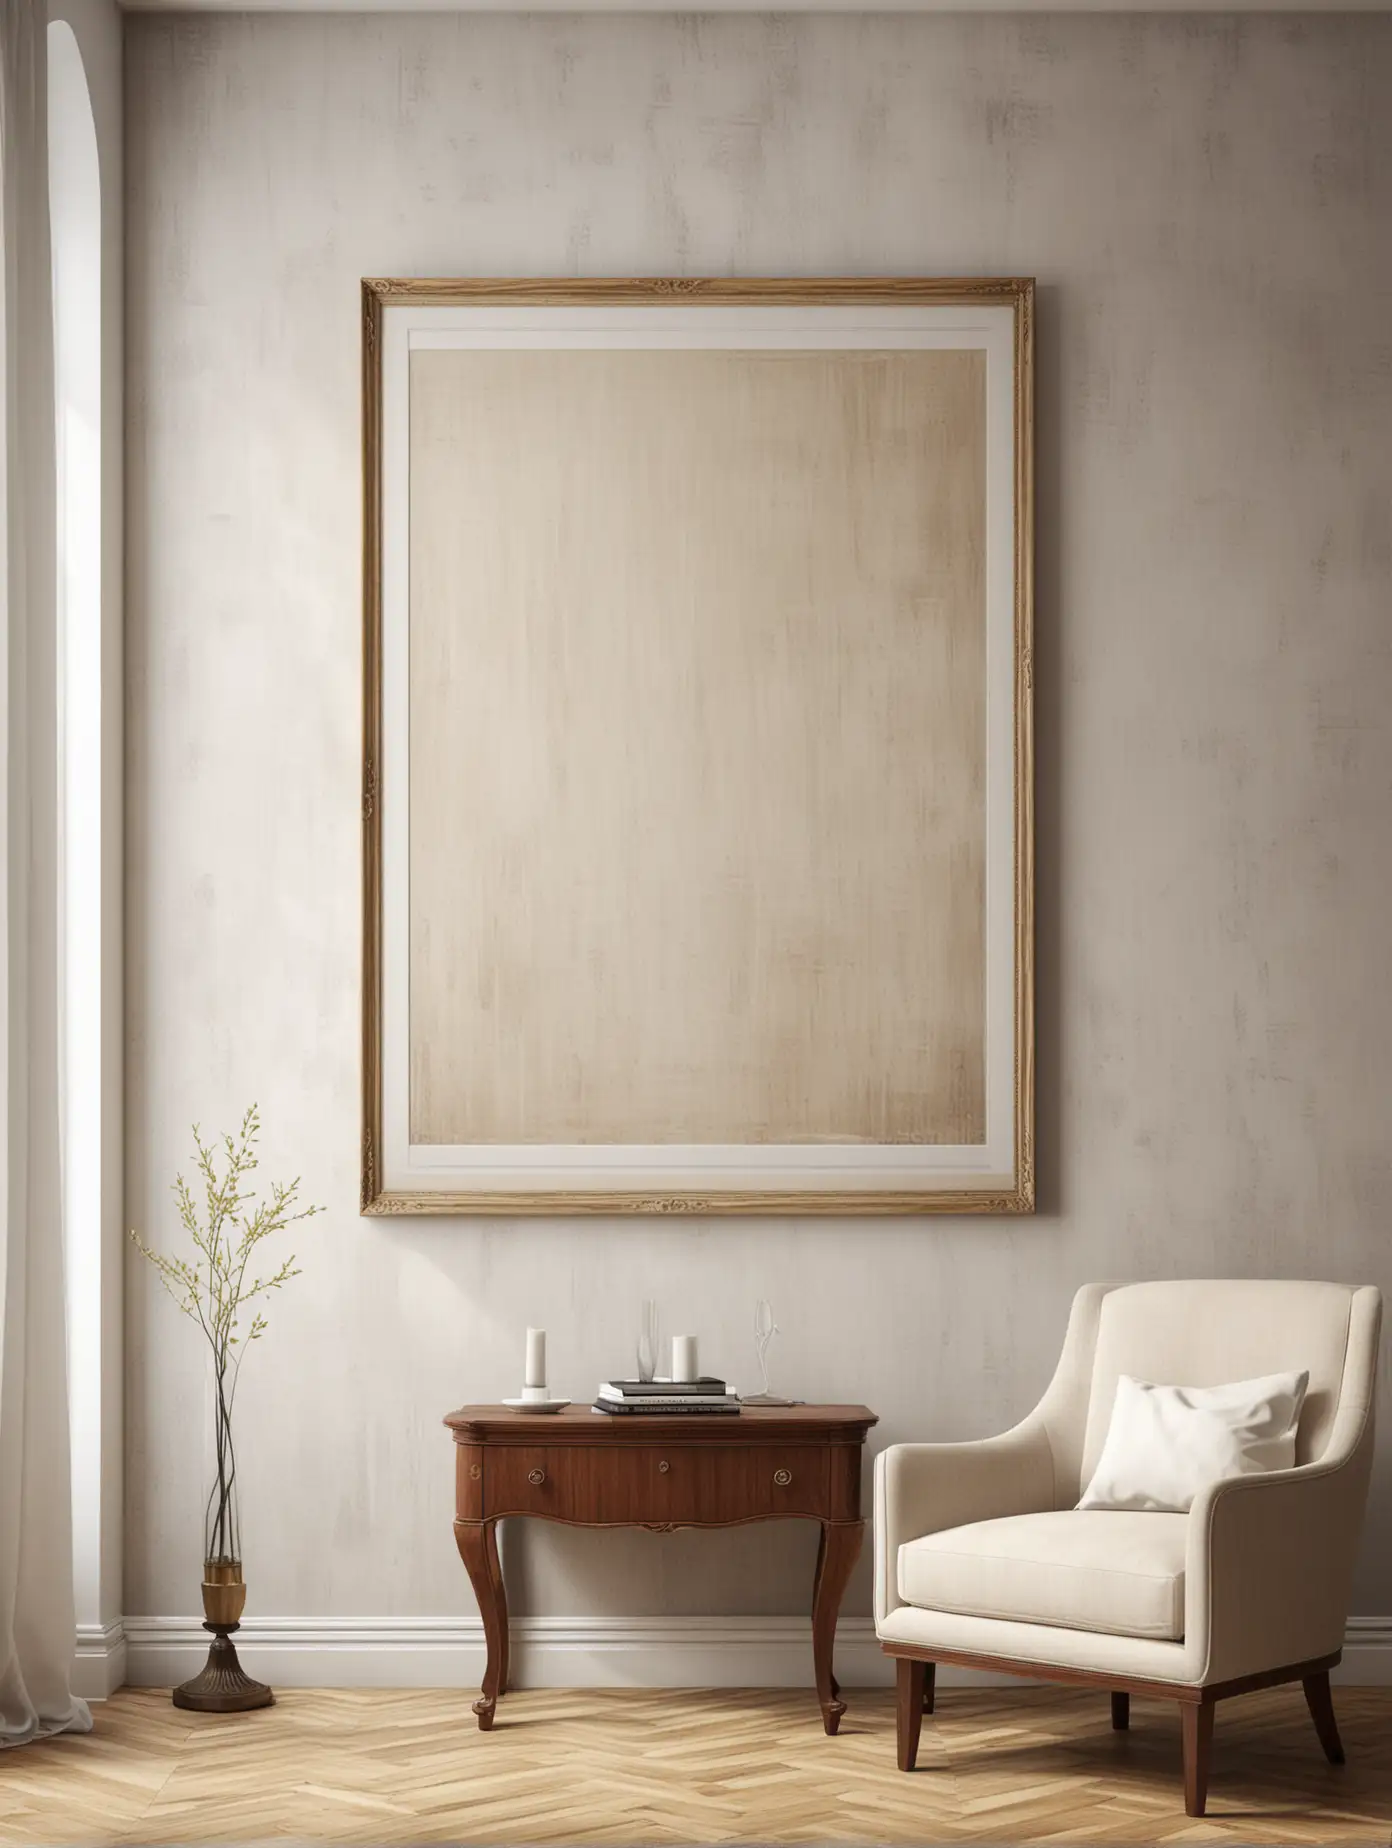 Elegant Living Room Interior with Blank Vertical Frame for Custom Artwork